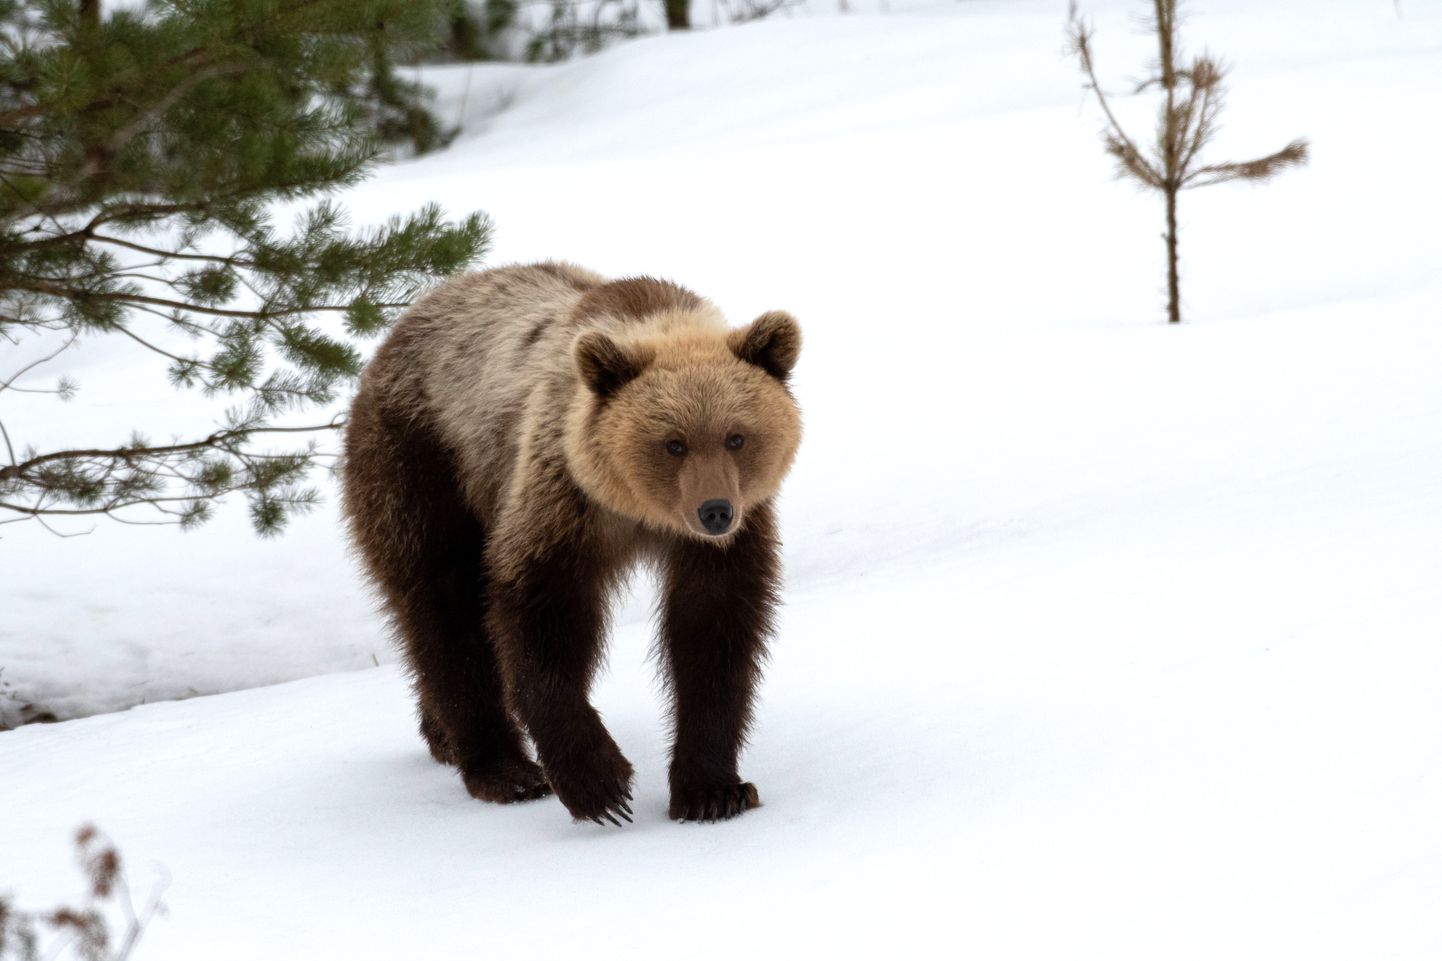 Медведь - вожделенный трофей для охотников, однако отстрел косолапых очень строго регламентирован. Местные охотничьи общества часто перепродают лицензию на отстрел медведя иностранцам, получая тем самым дополнительный заработок.